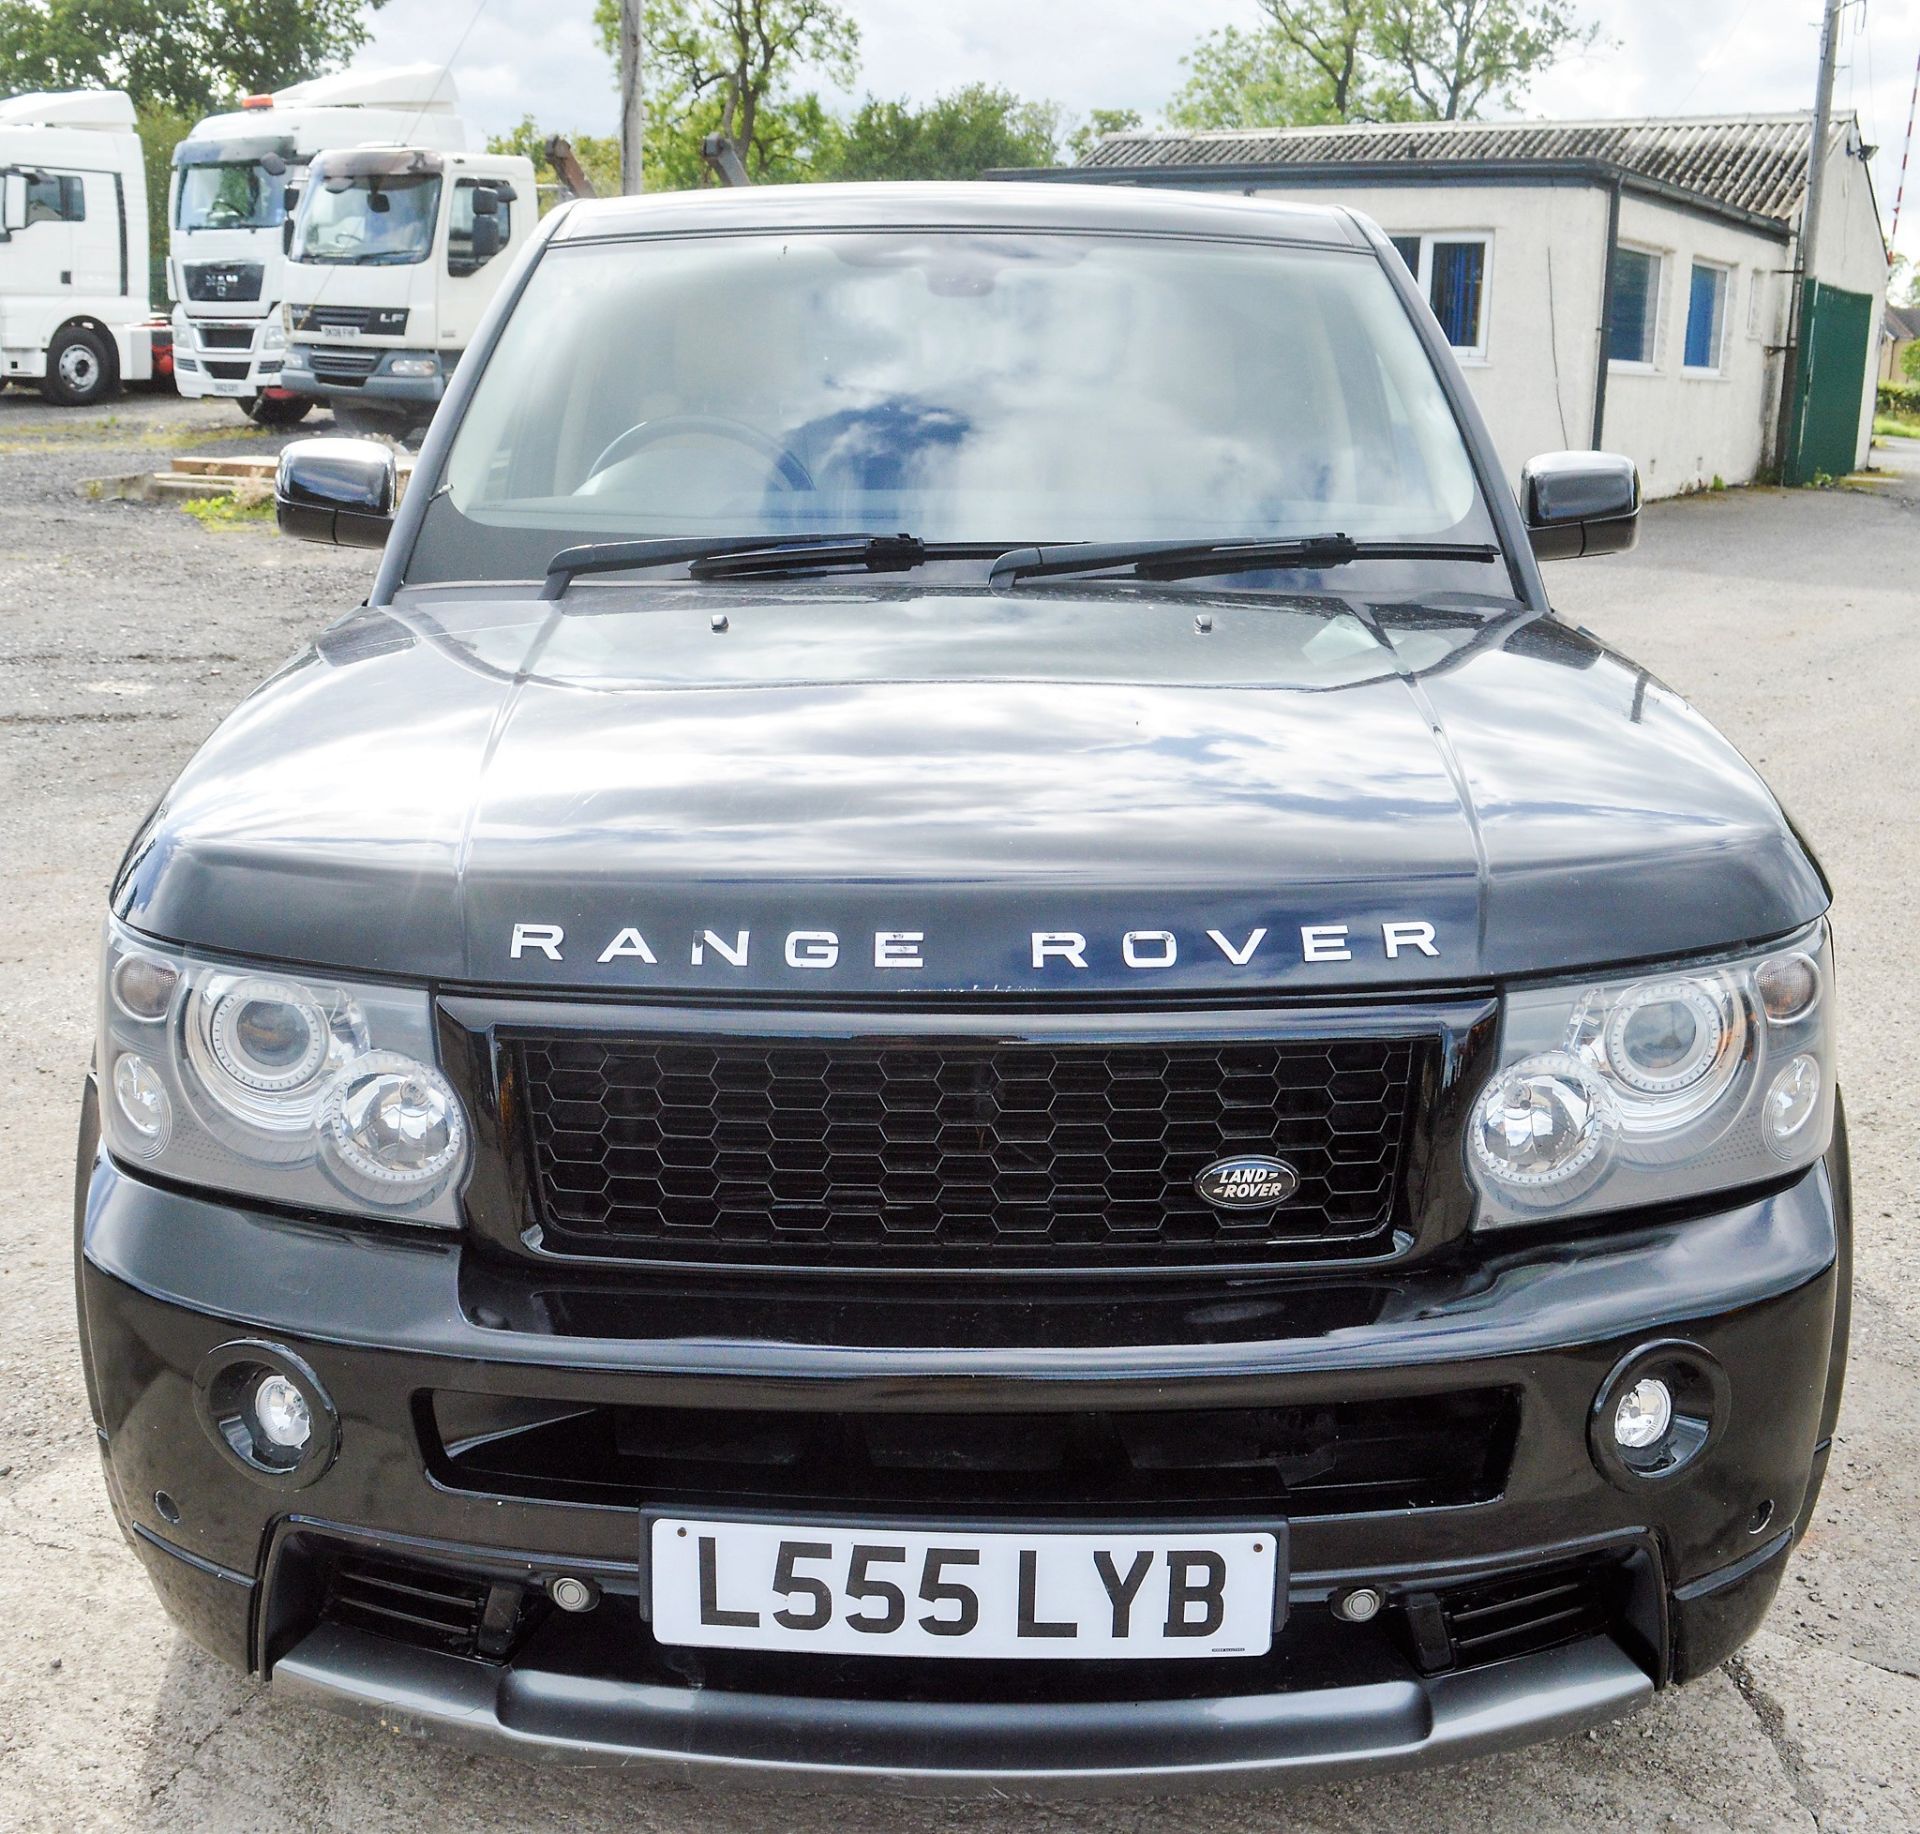 Range Rover Sport HSE TDV6 Estate car Registration Number: L555 LYB Date of Registration: 20/10/2006 - Image 5 of 12